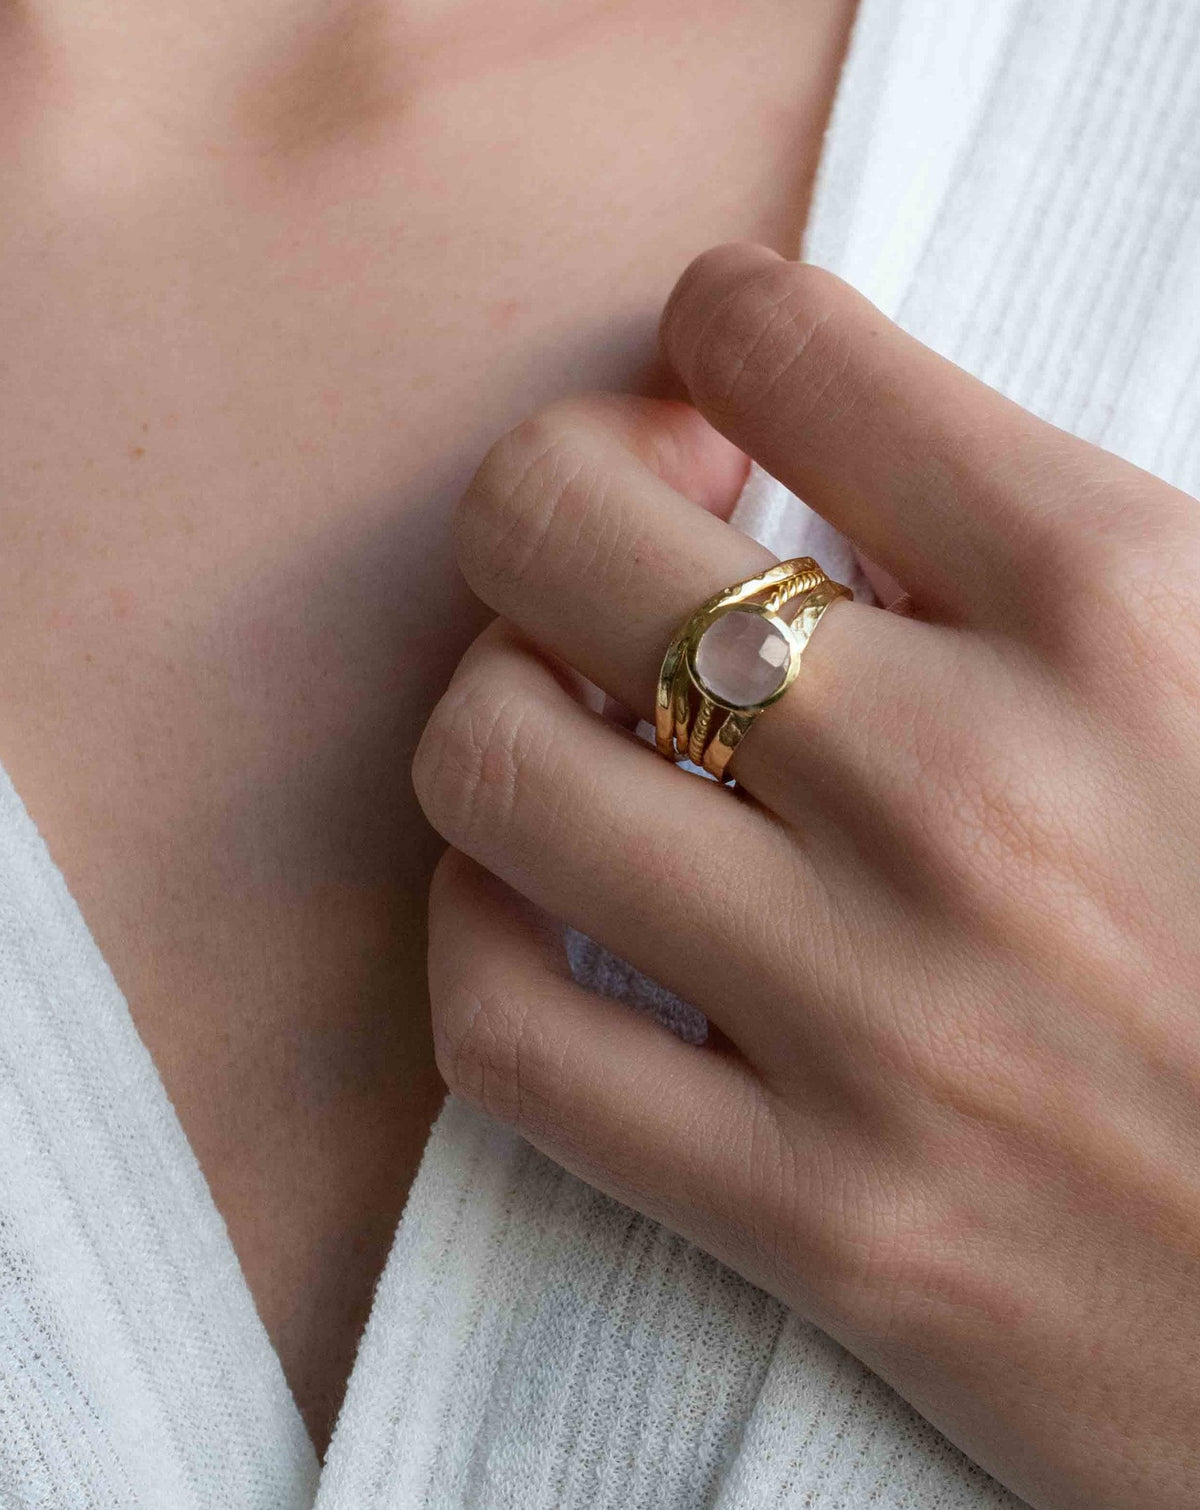 Rose Quartz Ring * 18k Gold Plated Ring * Statement Ring * Gemstone Ring * Pink * Bridal Ring * Wedding Ring *Organic Ring * Natural *BJR300